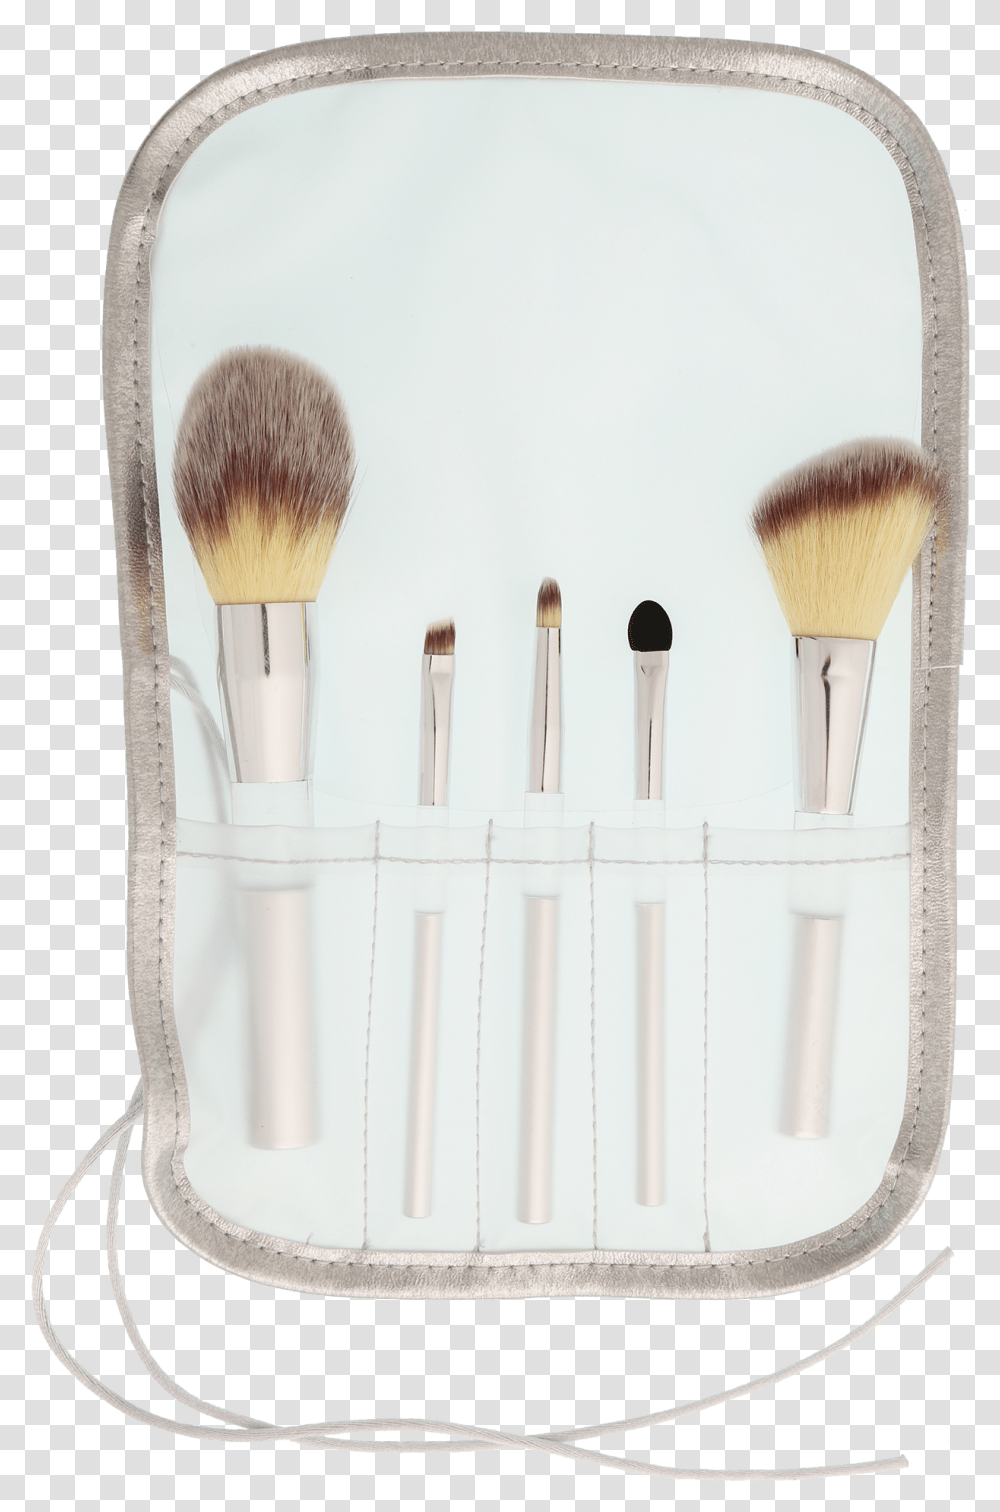 Makeup Brushes Download Makeup Brushes, Cosmetics, Tool, Face Makeup Transparent Png